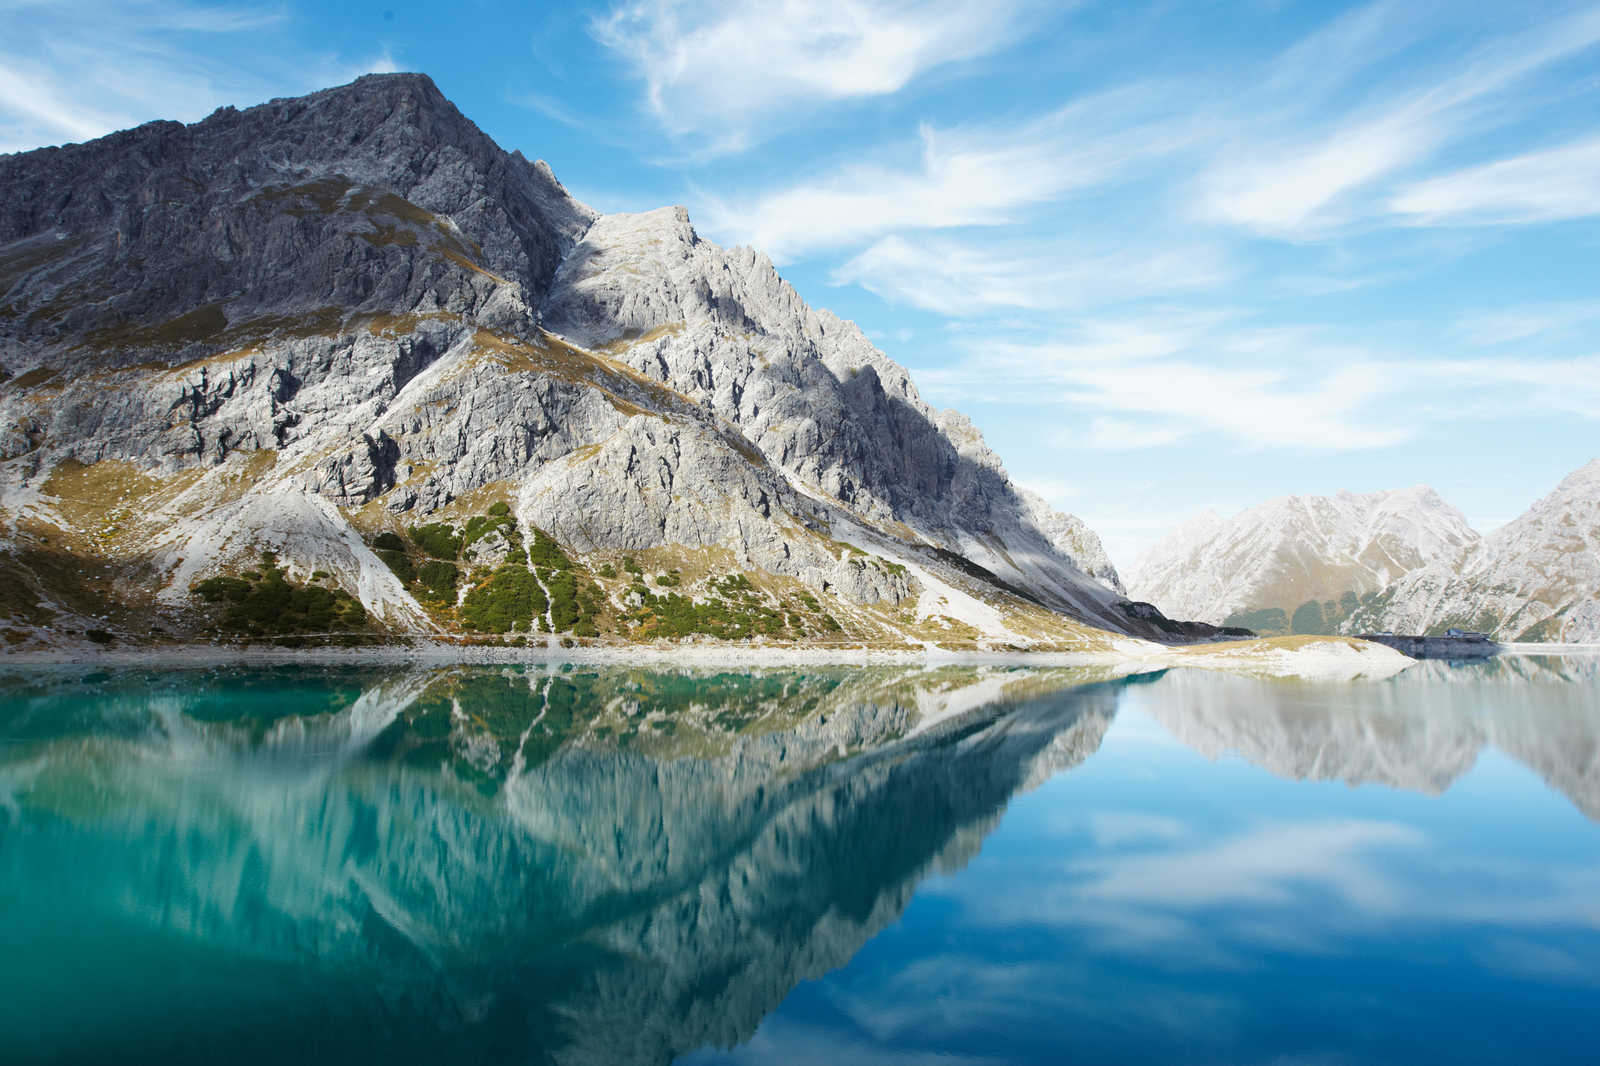             Lac de montagne clair - toile avec panorama naturel de montagne - 1,20 m x 0,80 m
        